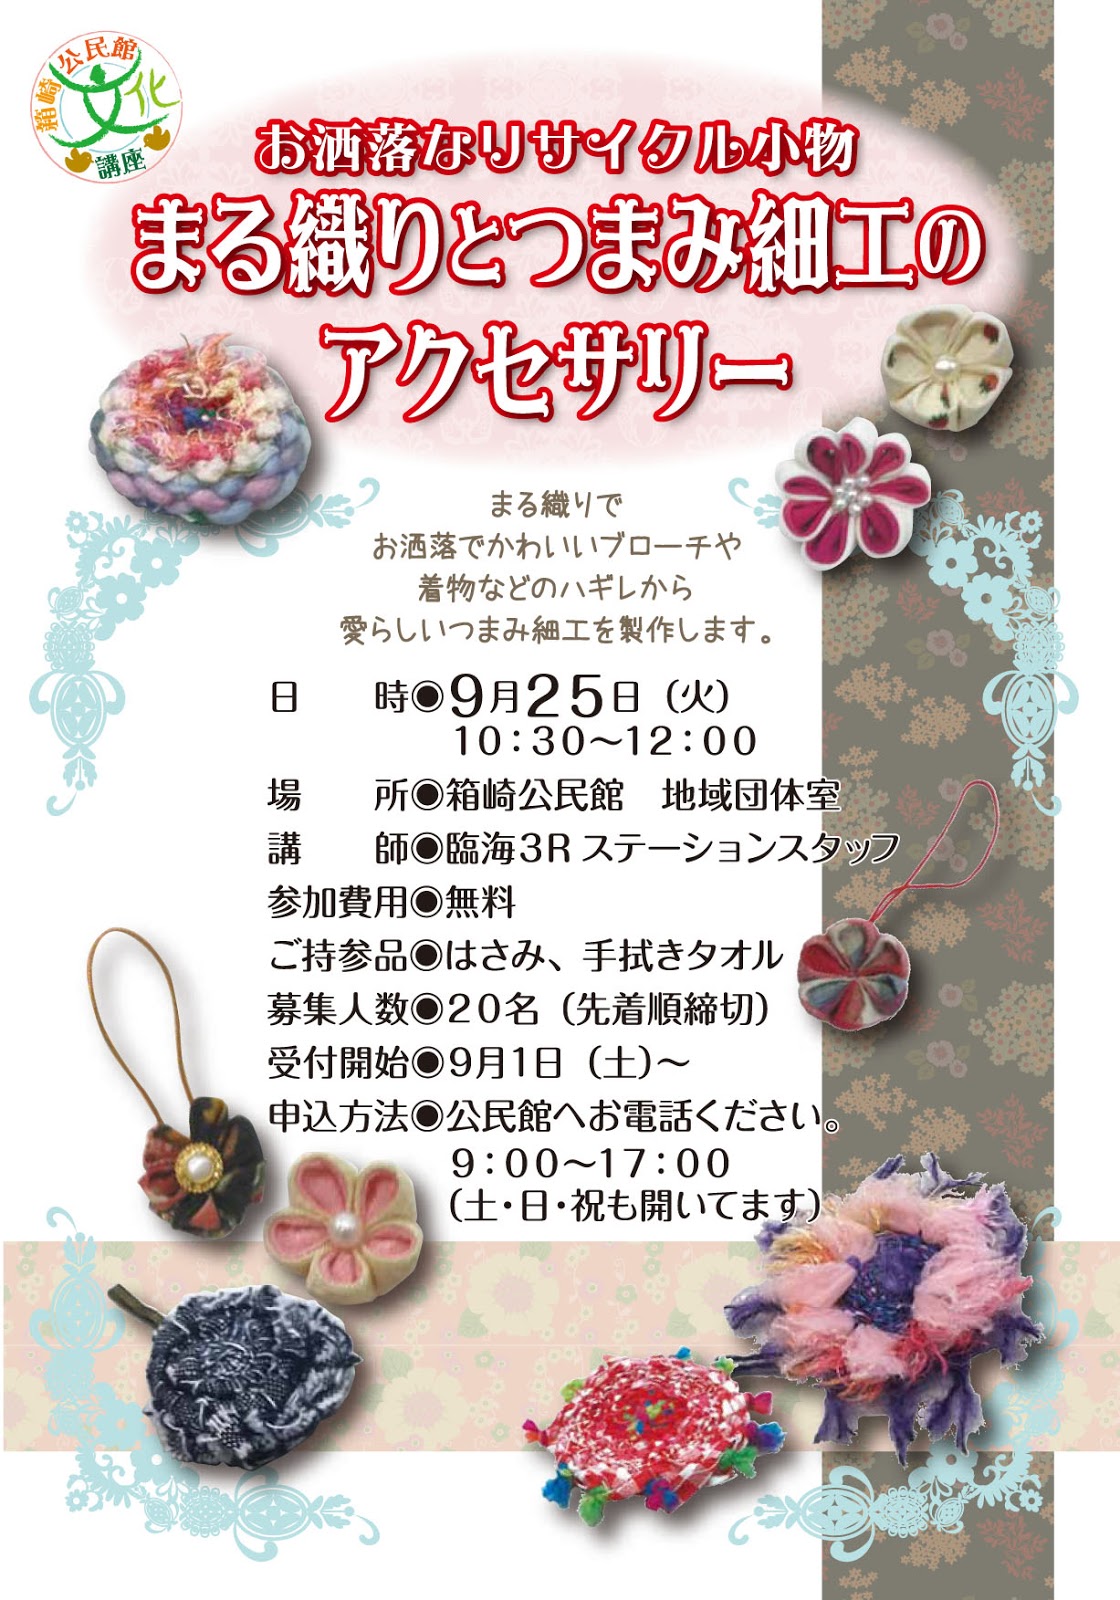 福岡市箱崎公民館ブログ: まる織りとつまみ細工のアクセサリー